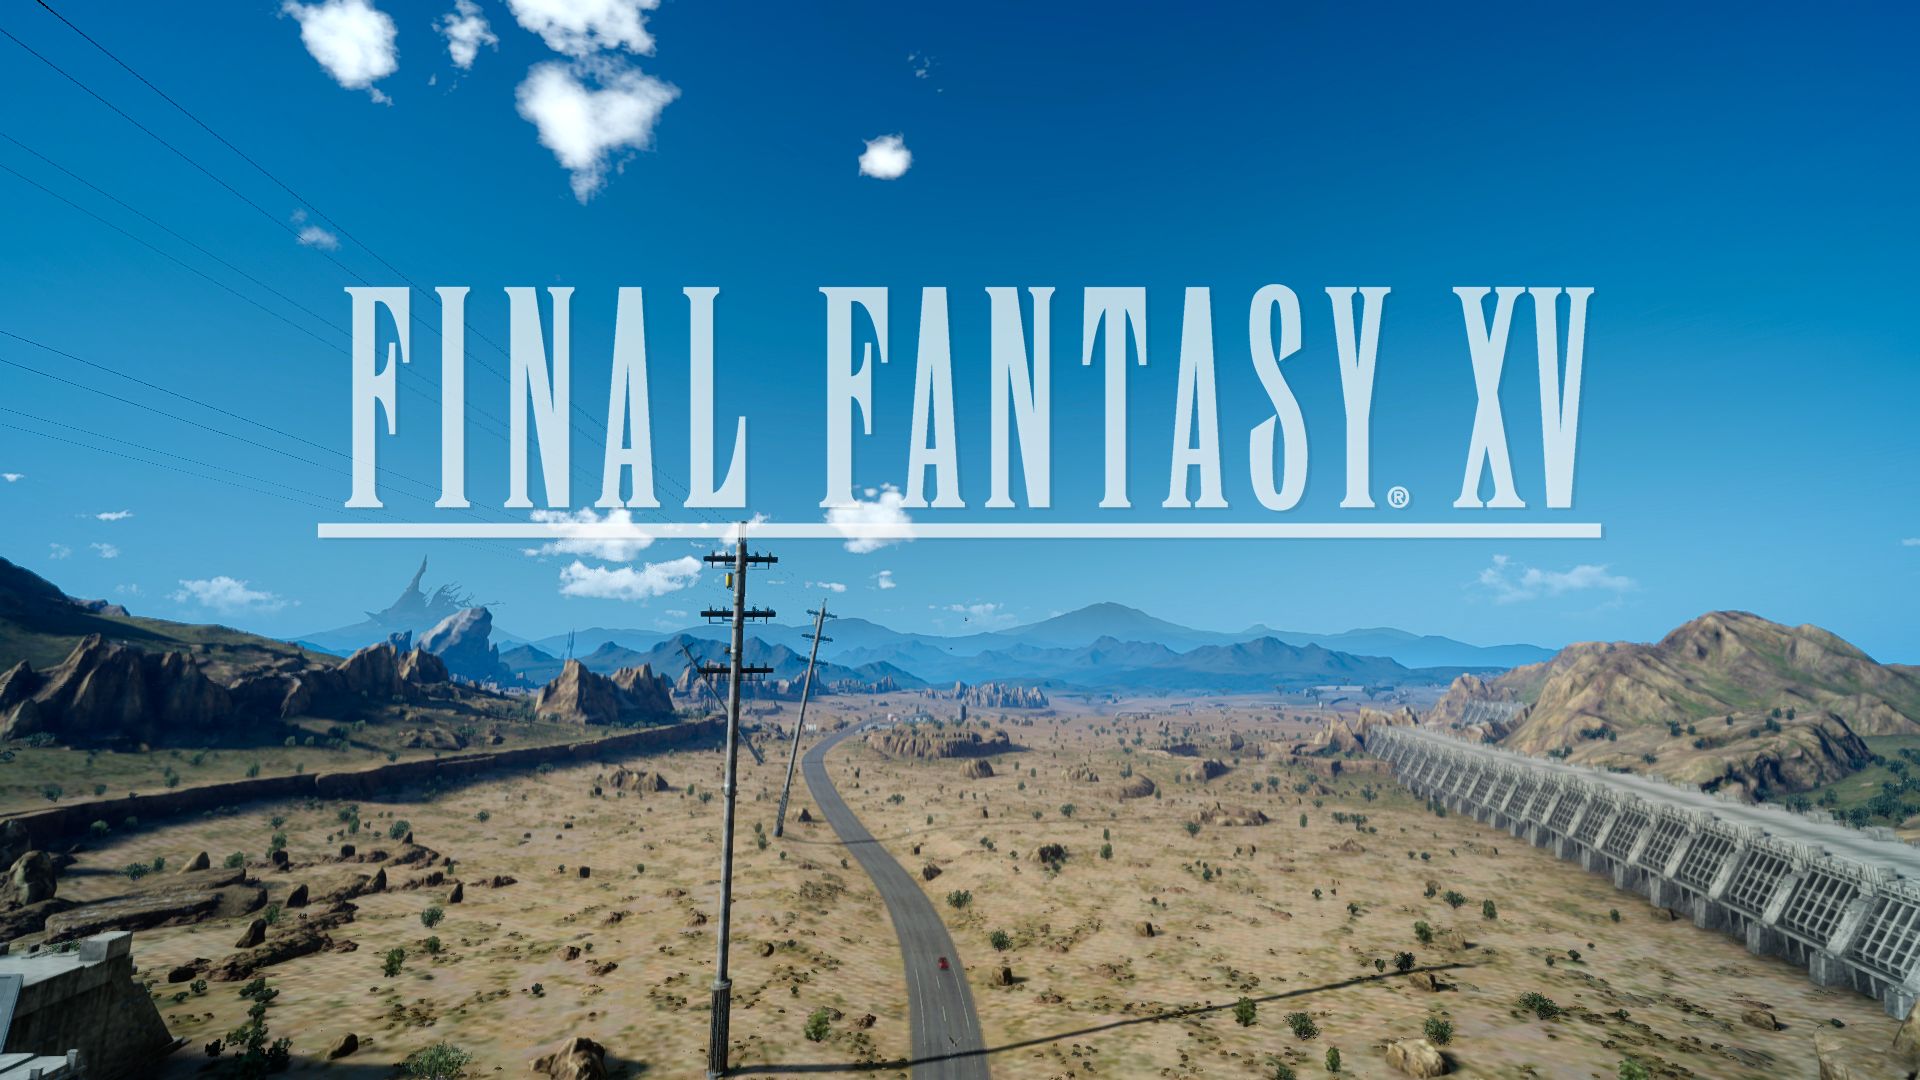 Final Fantasy XV Logo sur route désertique